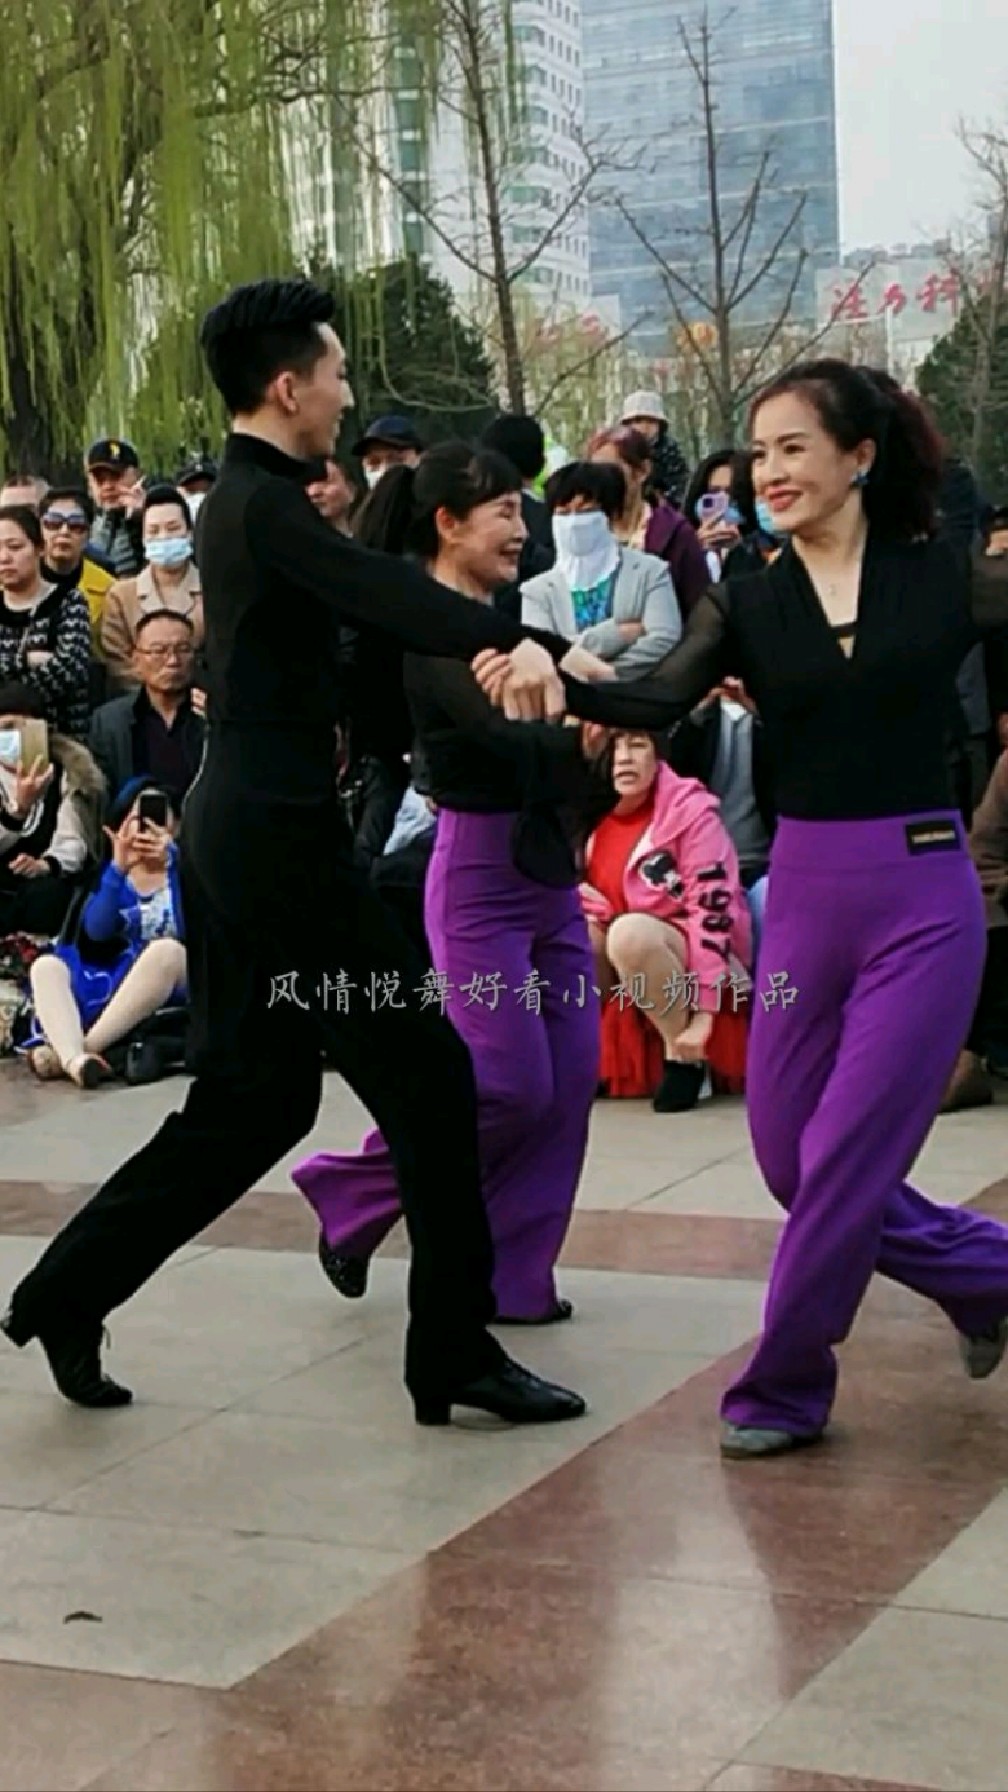 帅小伙带唐山两位美女徒弟在广场表演精彩吉舞真美